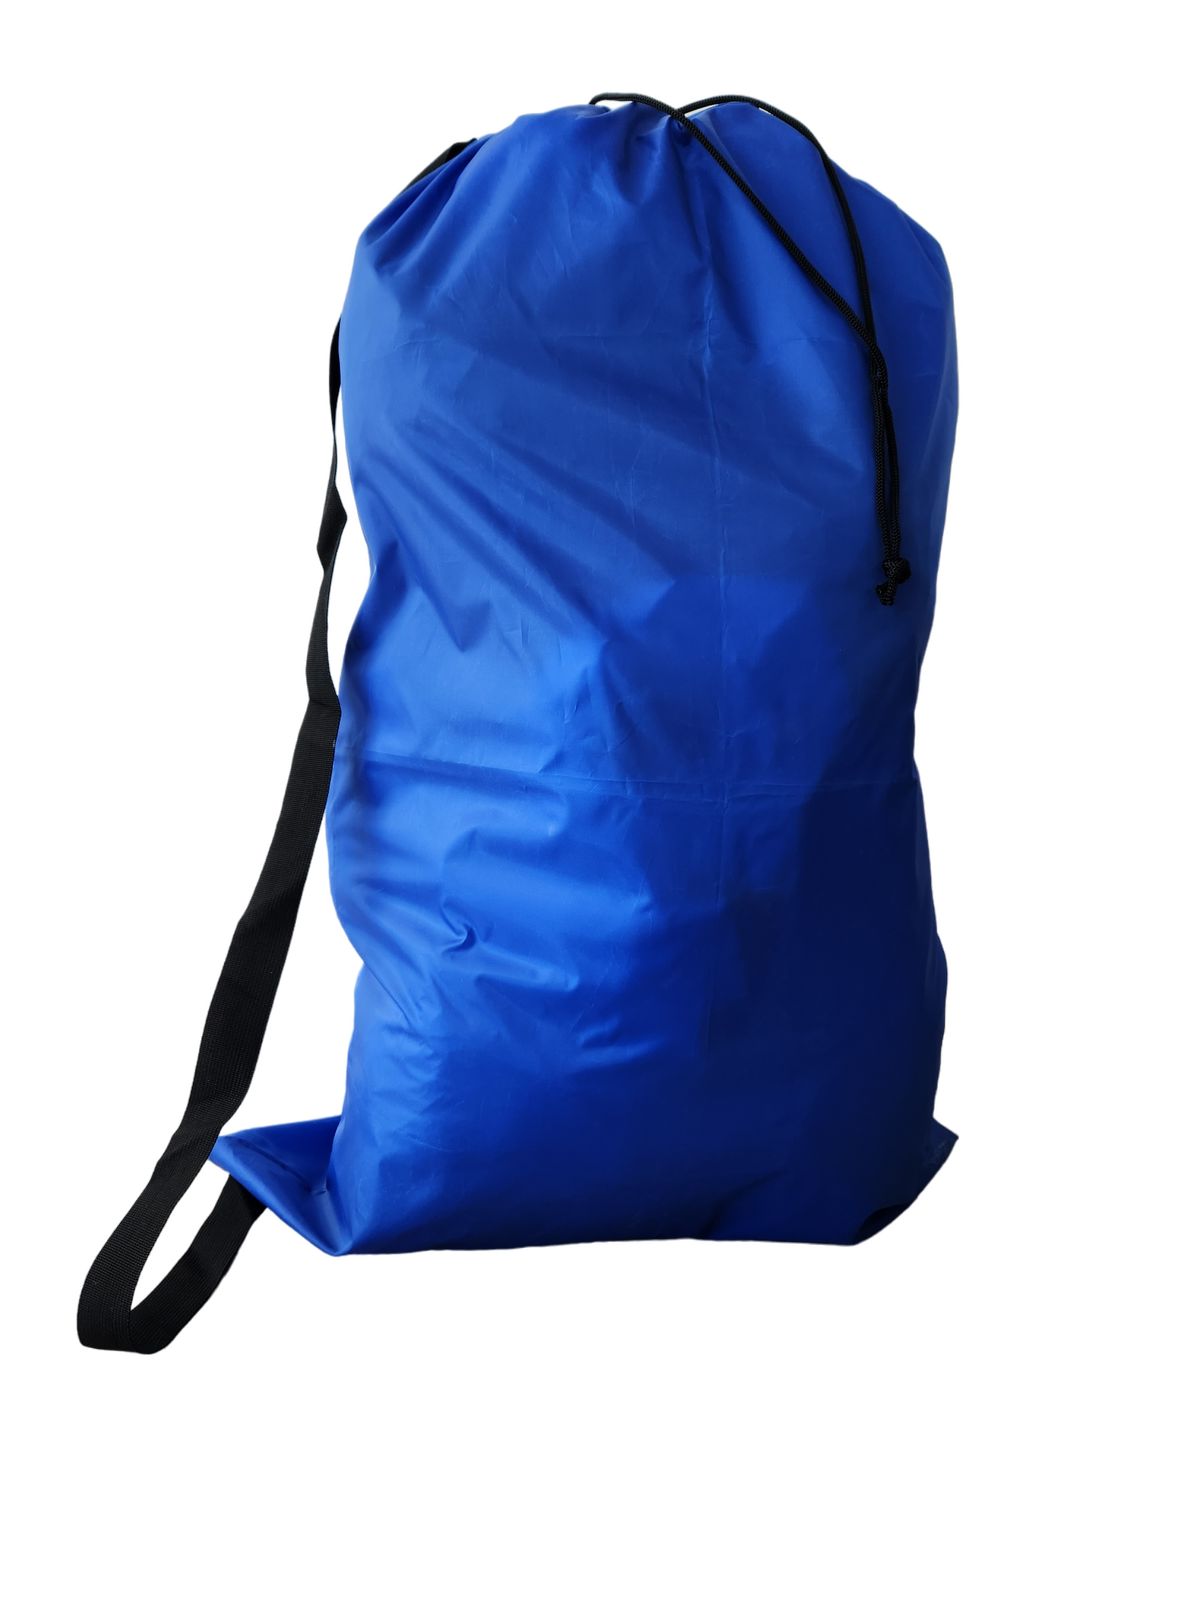 Source Latest design laundry bag cotton laundry bag on malibabacom